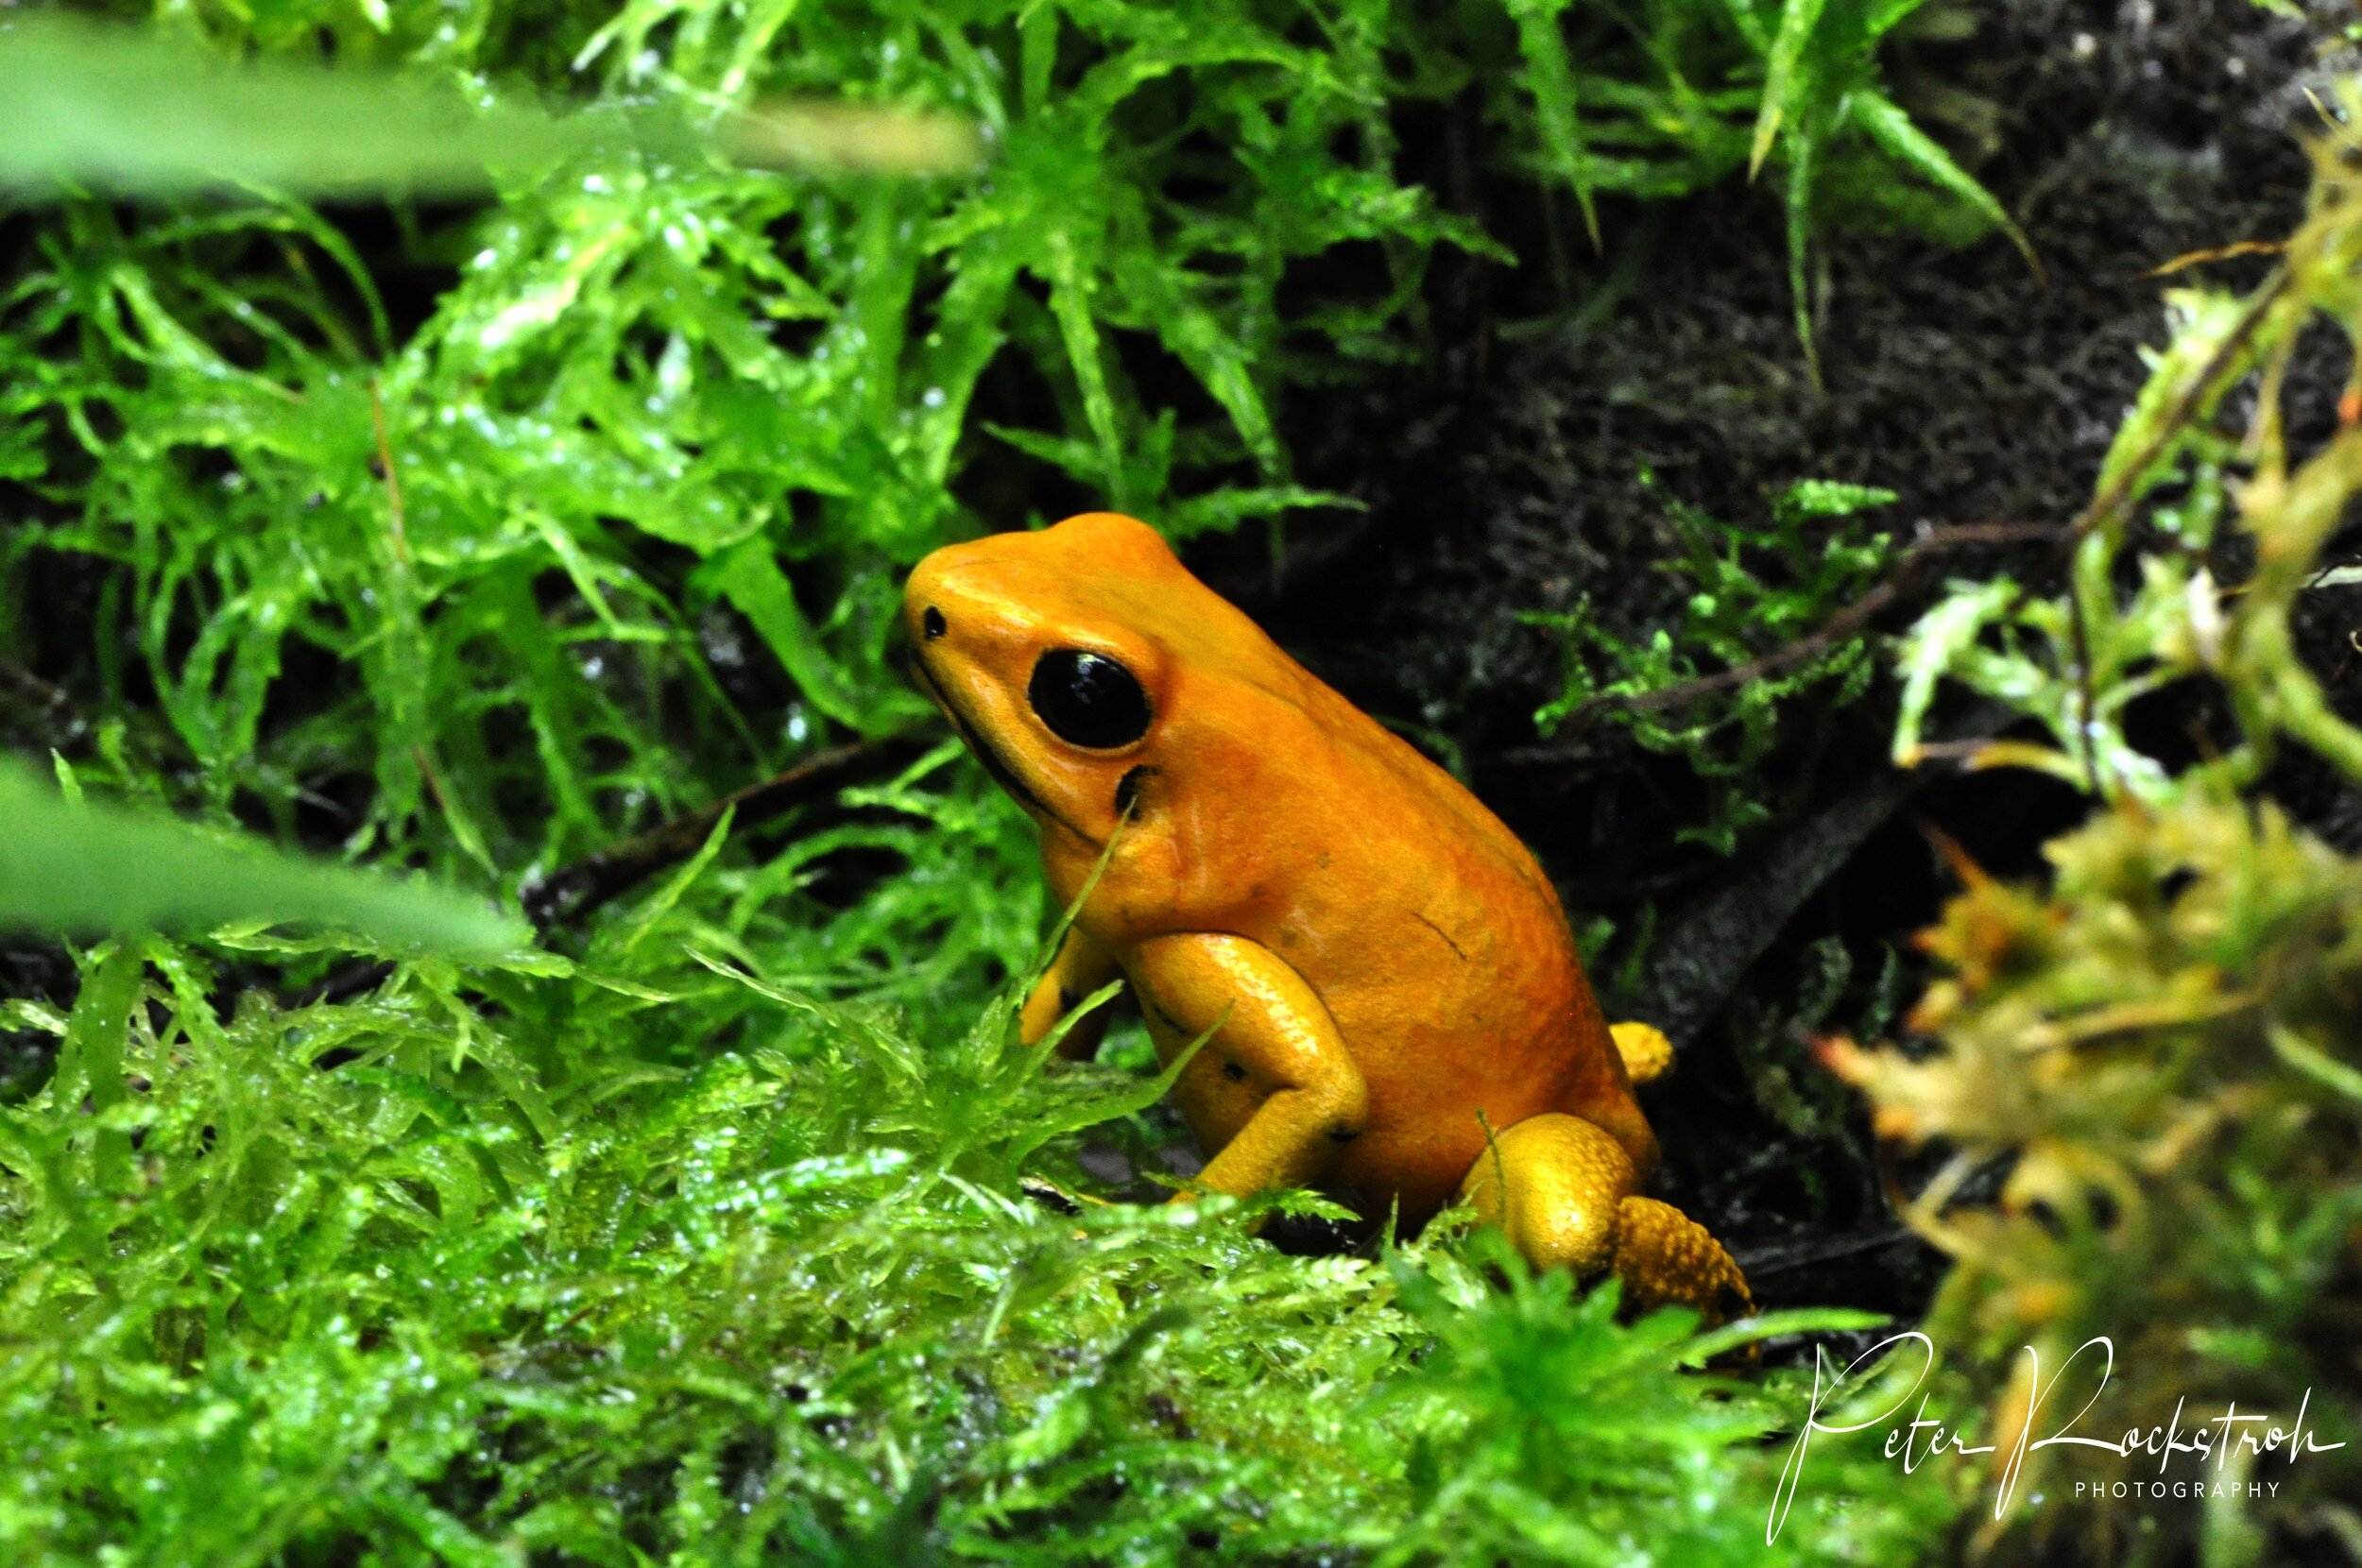 Poison Dart Frogs—Drop Dead Gorgeous